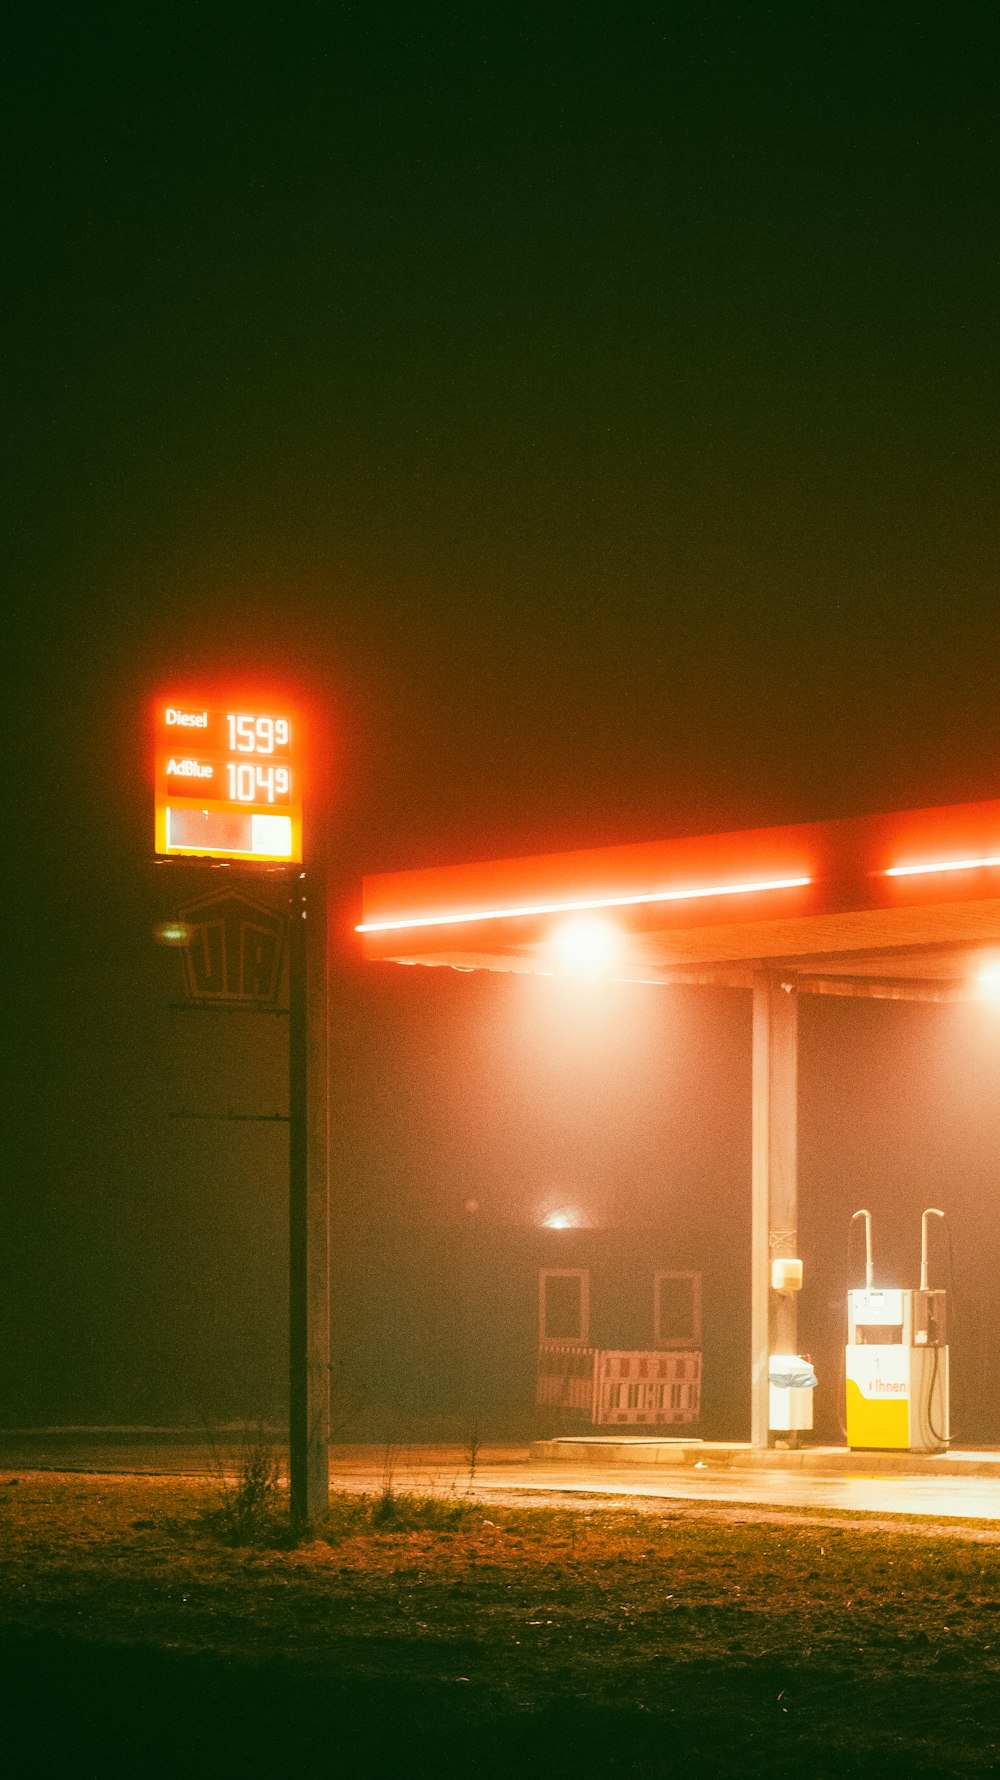 Una gasolinera de noche con un semáforo en rojo